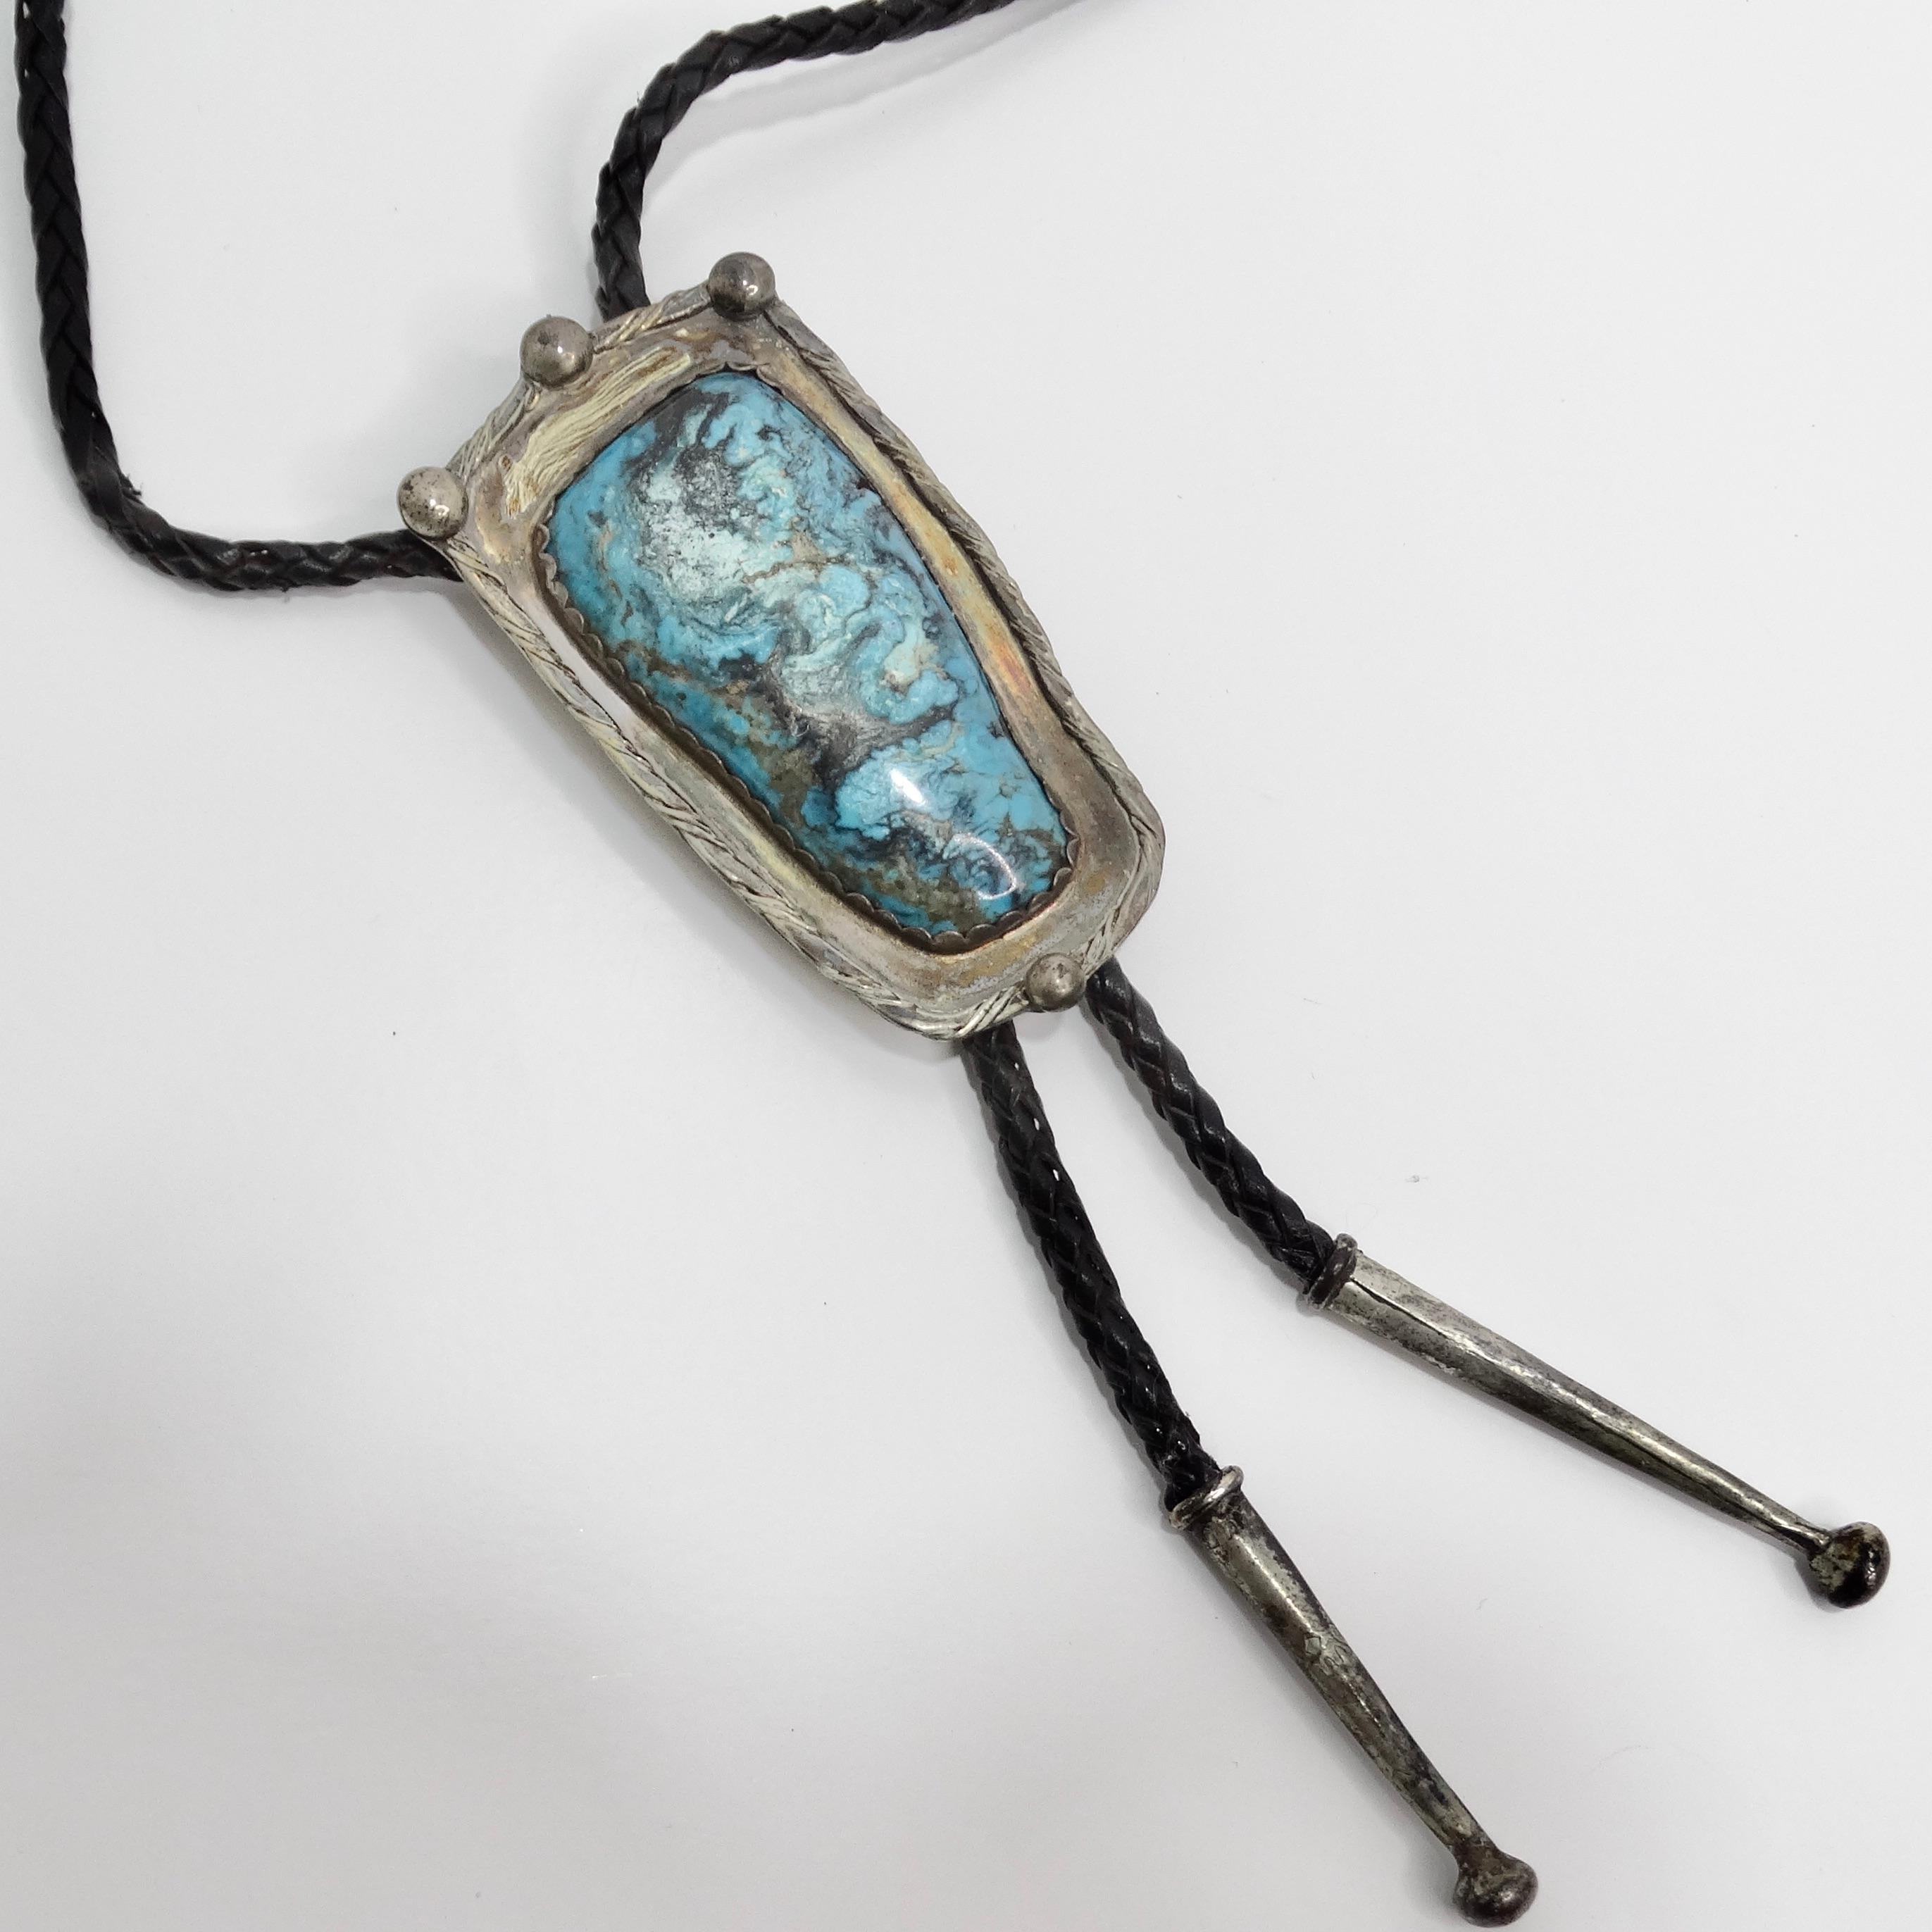 Die 1960er Native American Silver Turquoise Bolo Necklace ist ein fesselndes Stück, das die reiche Tradition und Handwerkskunst der amerikanischen Ureinwohner widerspiegelt. Diese atemberaubende Halskette im Bolo-Stil zeigt einen wunderschön